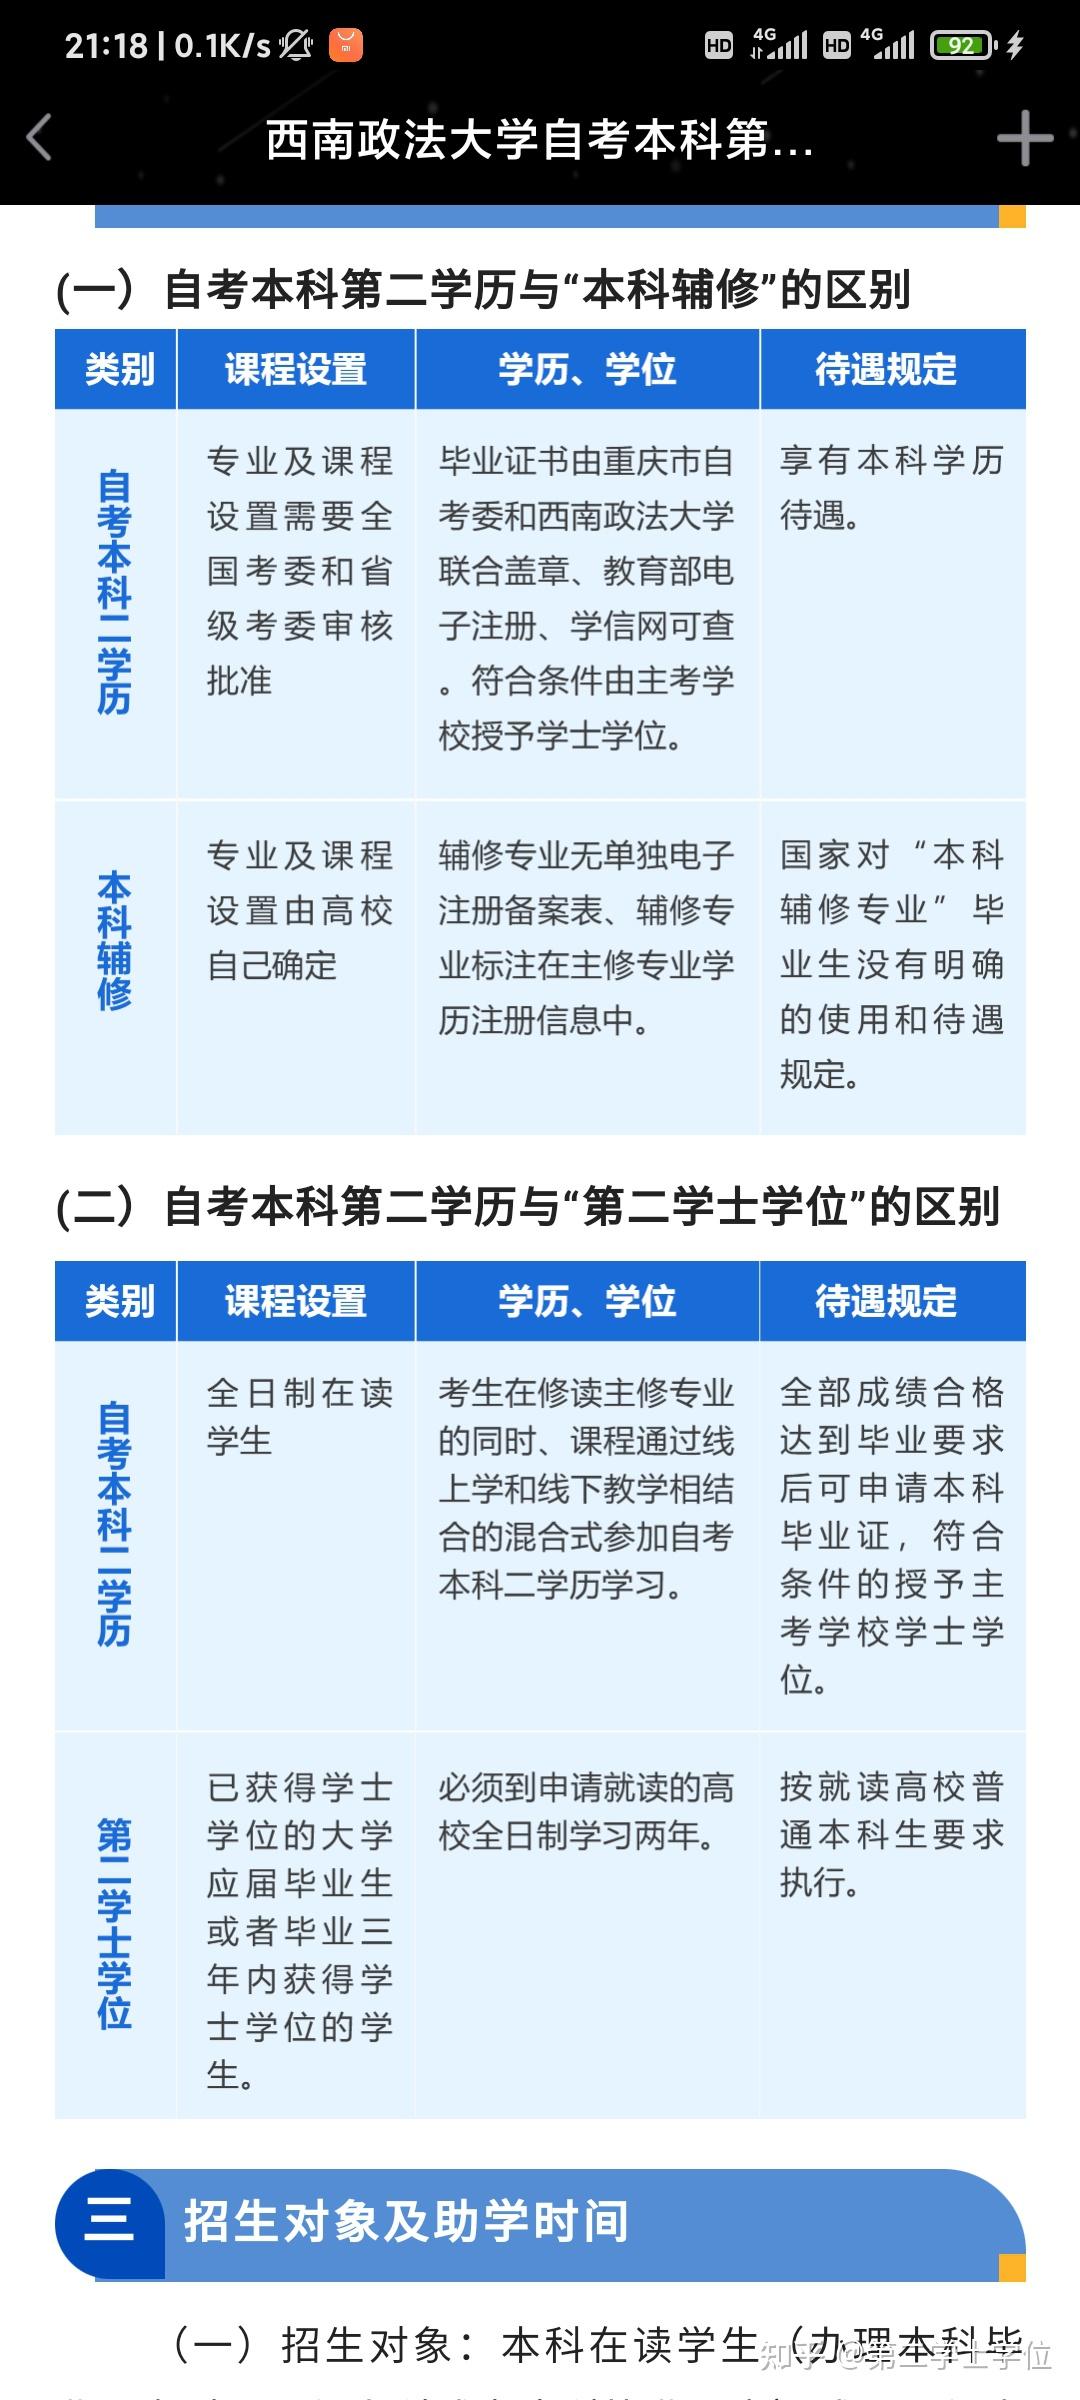 2022年辽宁省普通高等学校第二学士学位招生计划 - 知乎